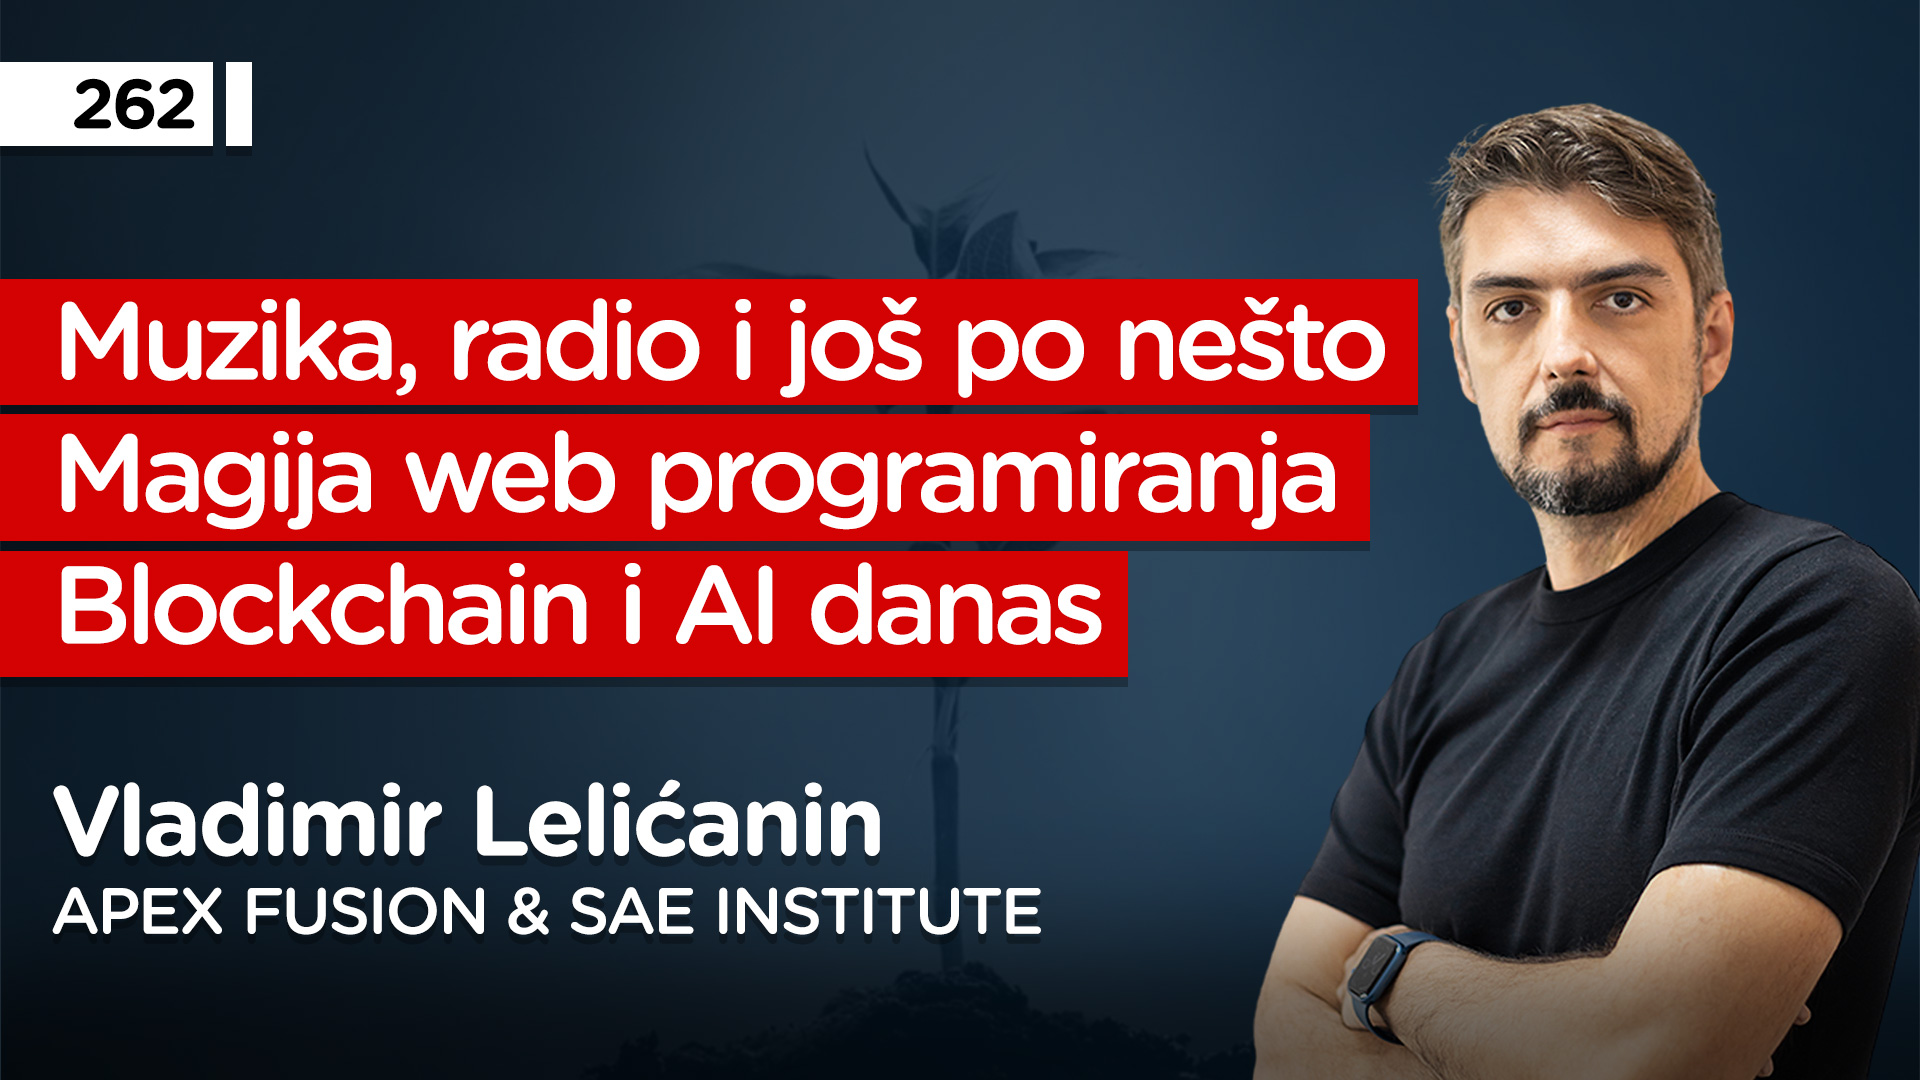 EP262: Vladimir Lelićanin